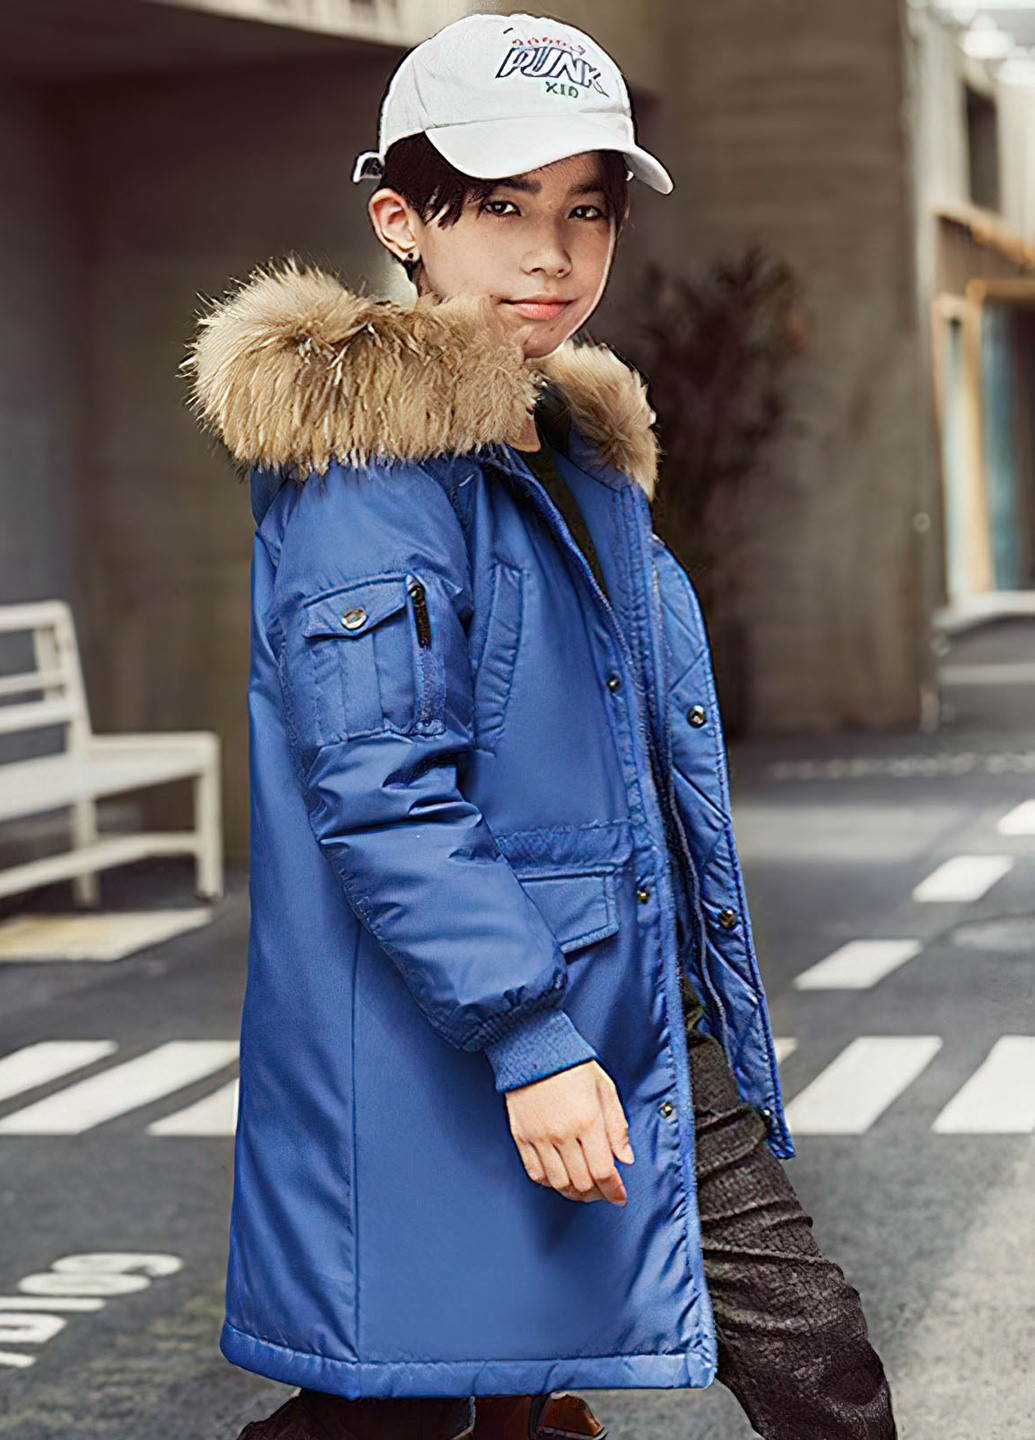 Синяя демисезонная куртка для мальчика пуховая зимняя 8497 170 см синий 63136 DobraMAMA